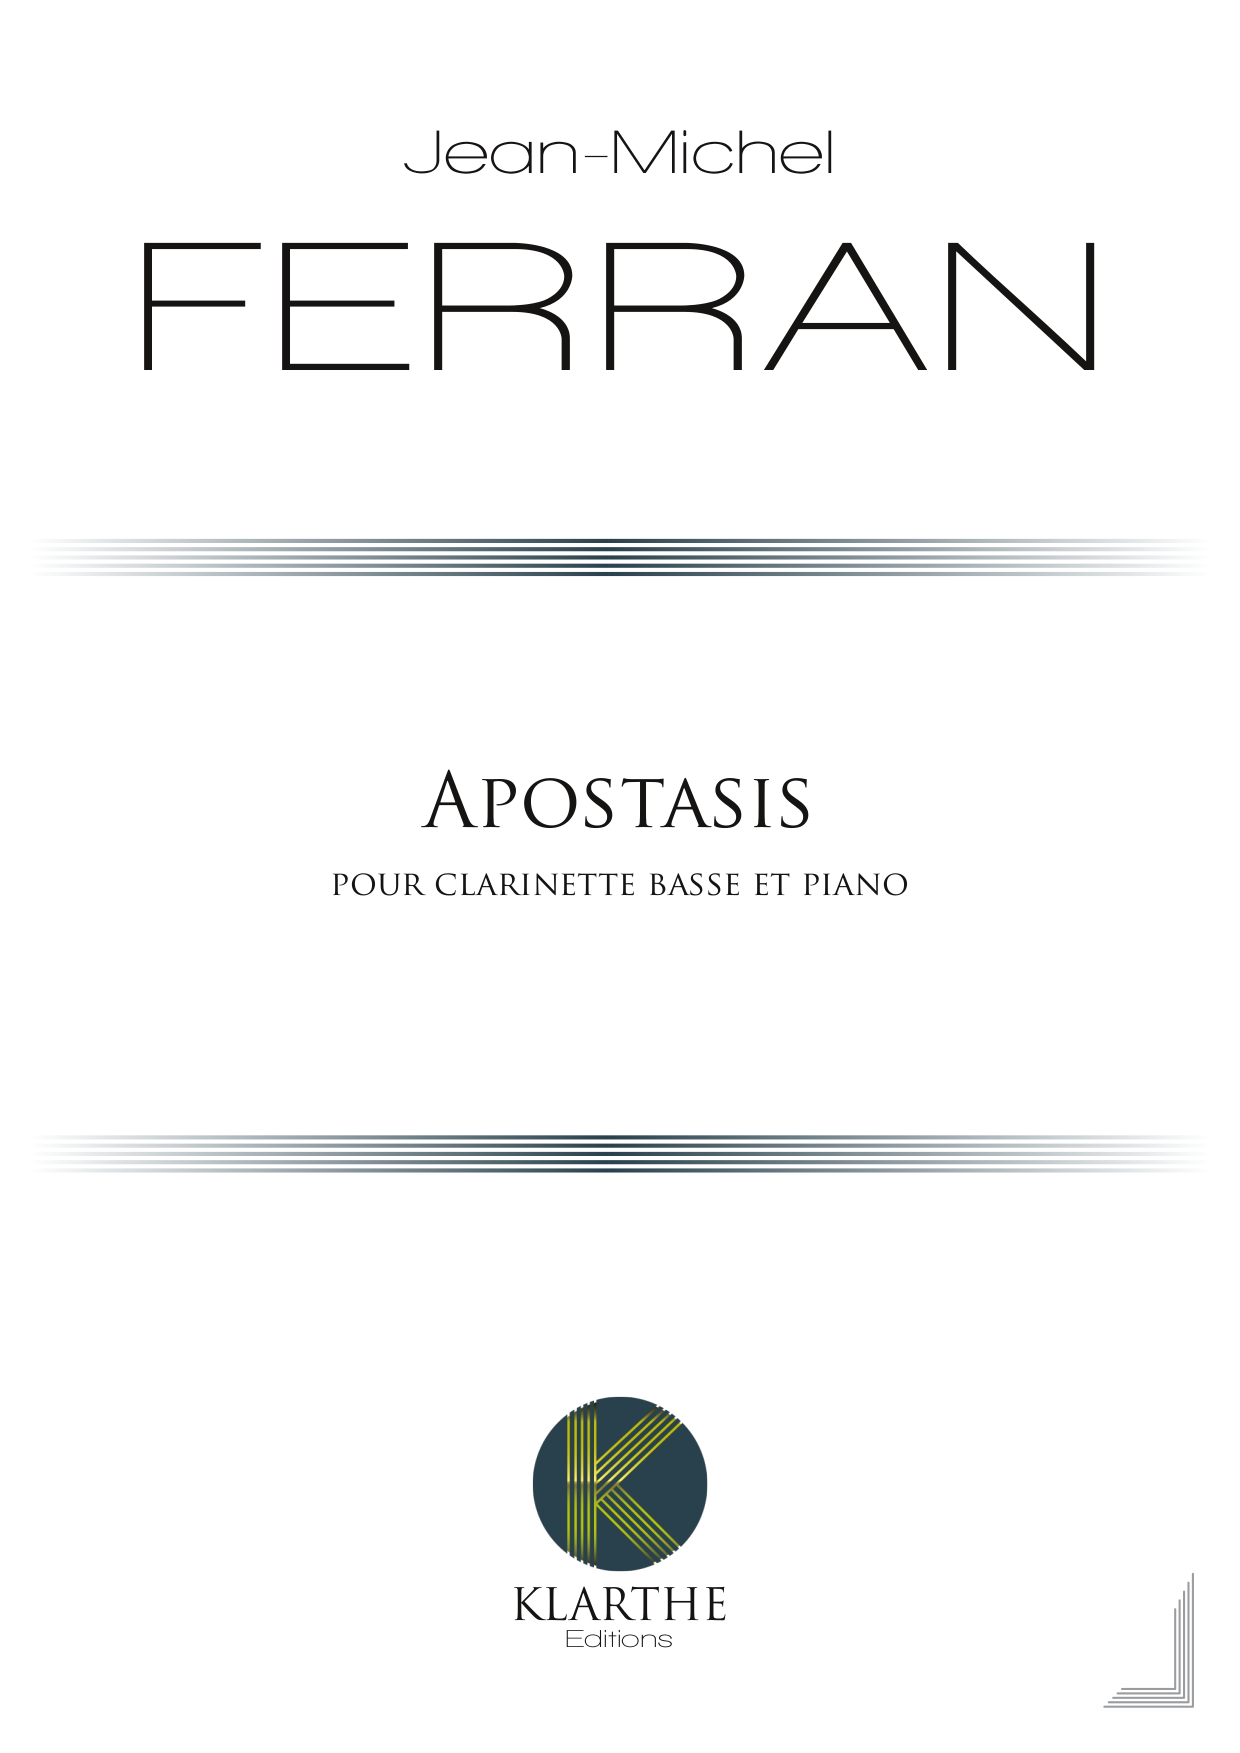 Apostasis (FERRAN JEAN-MICHEL)